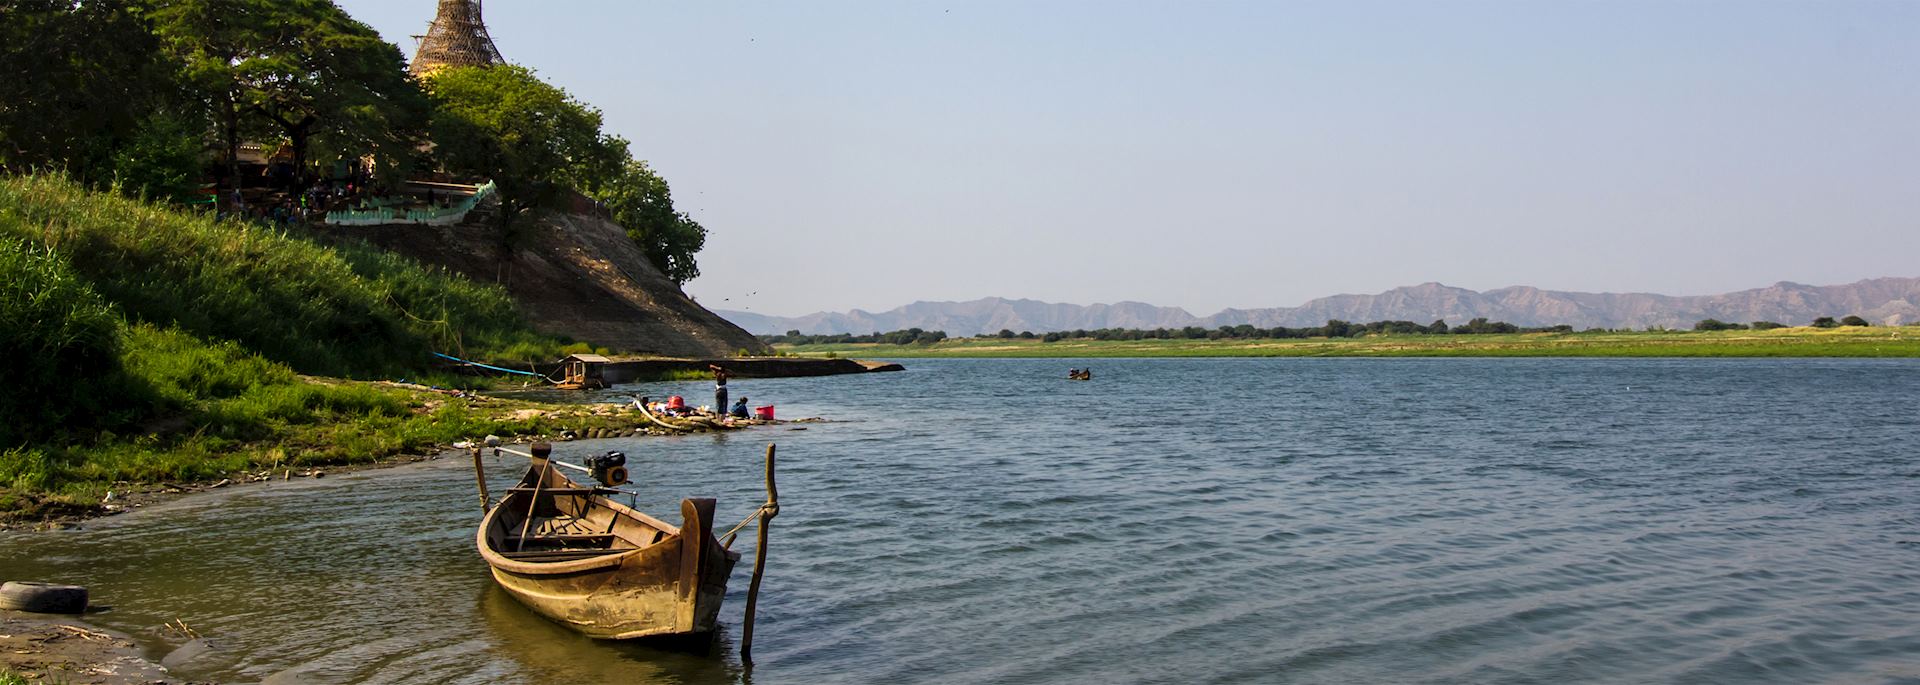 Ayeyarwady River, Bagan